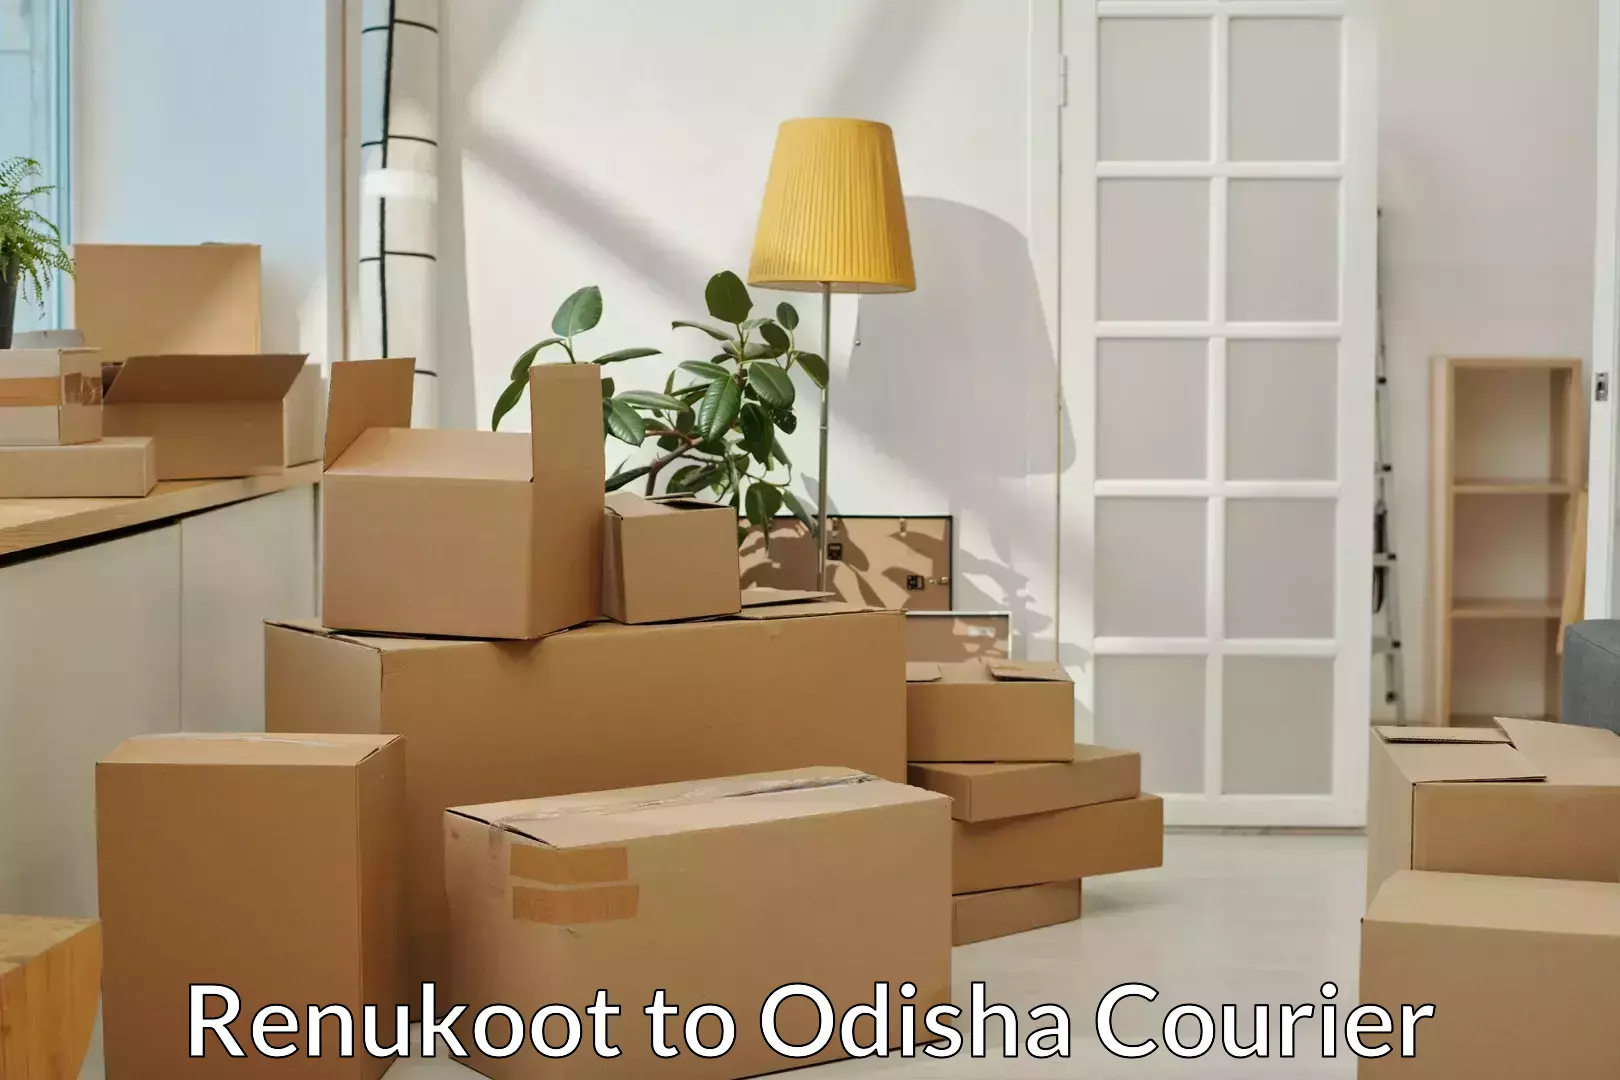 Budget-friendly movers Renukoot to Odisha